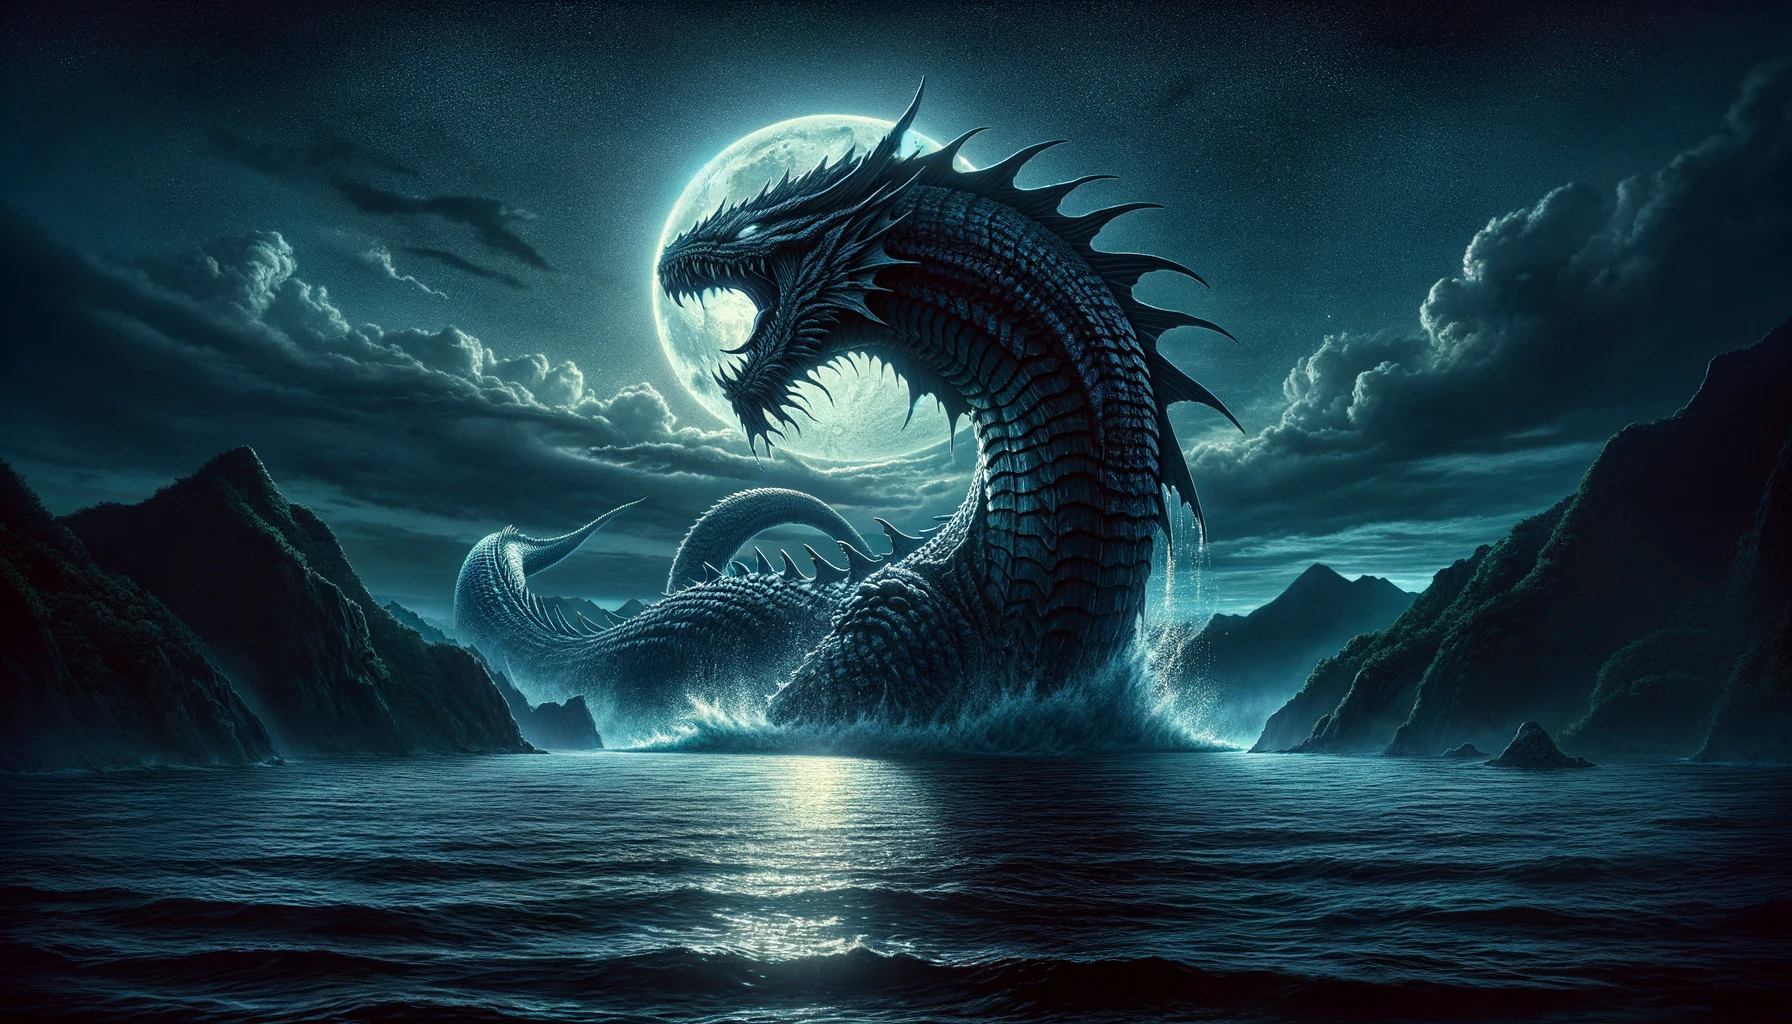 "月明かりの下、錦江湾から姿を現す伝説の海の怪物。その巨大な体は月光に照らされて輝き、遠くに桜島のシルエットが見える。"